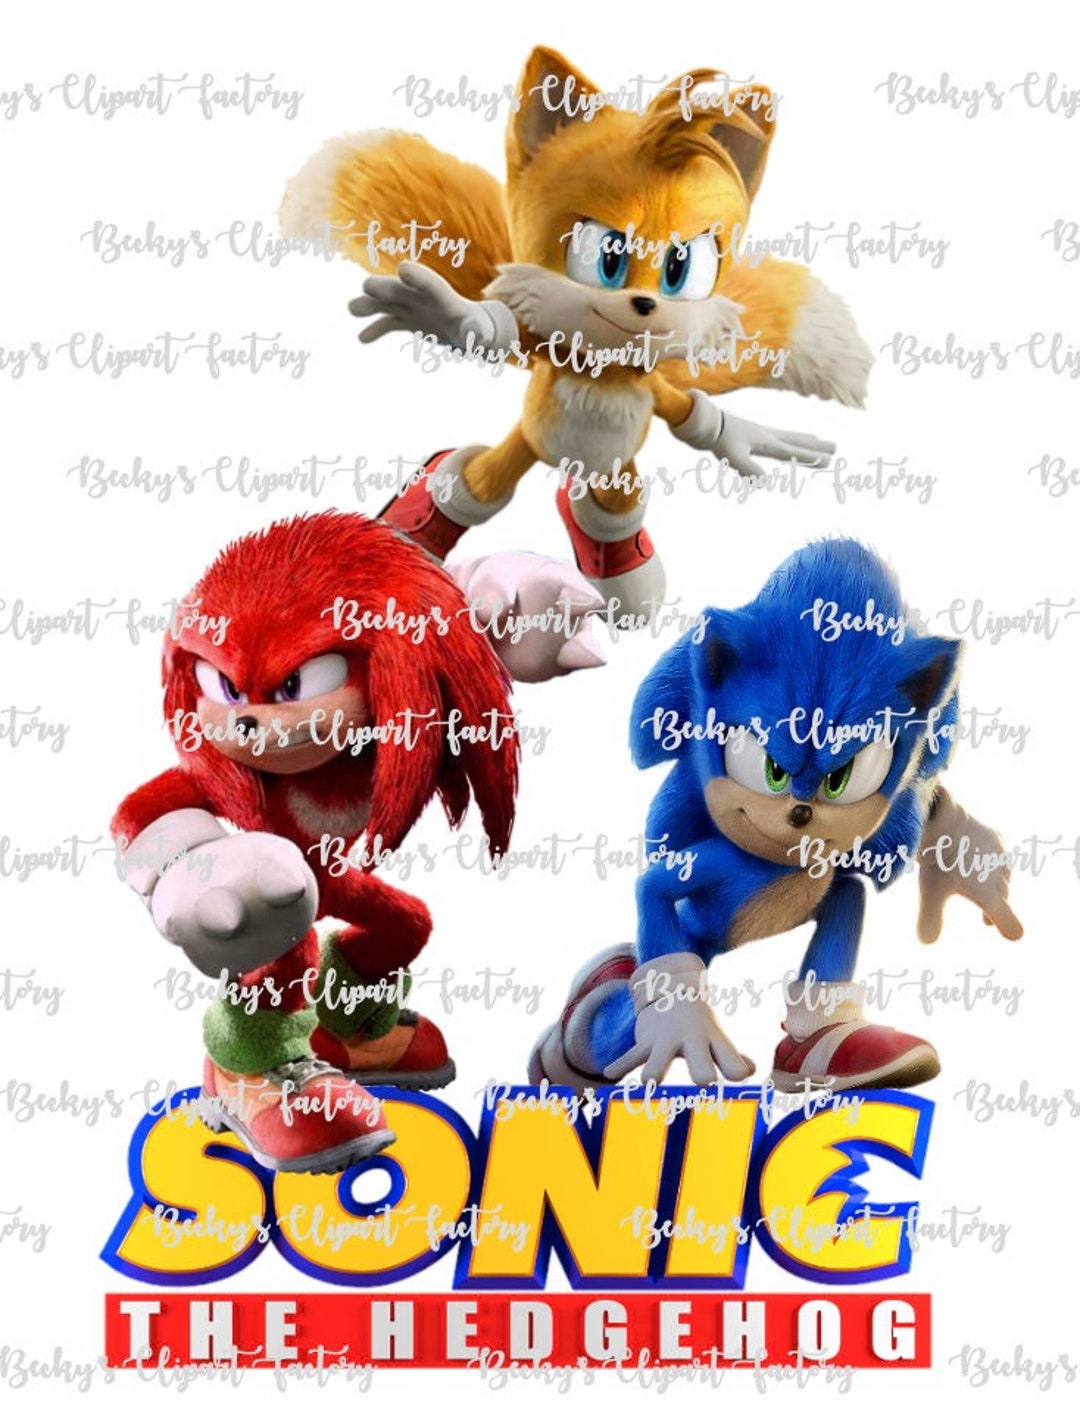 Tava Pesquisando Imagem Do Sonic E Vi O Pé Do Sonic;-;